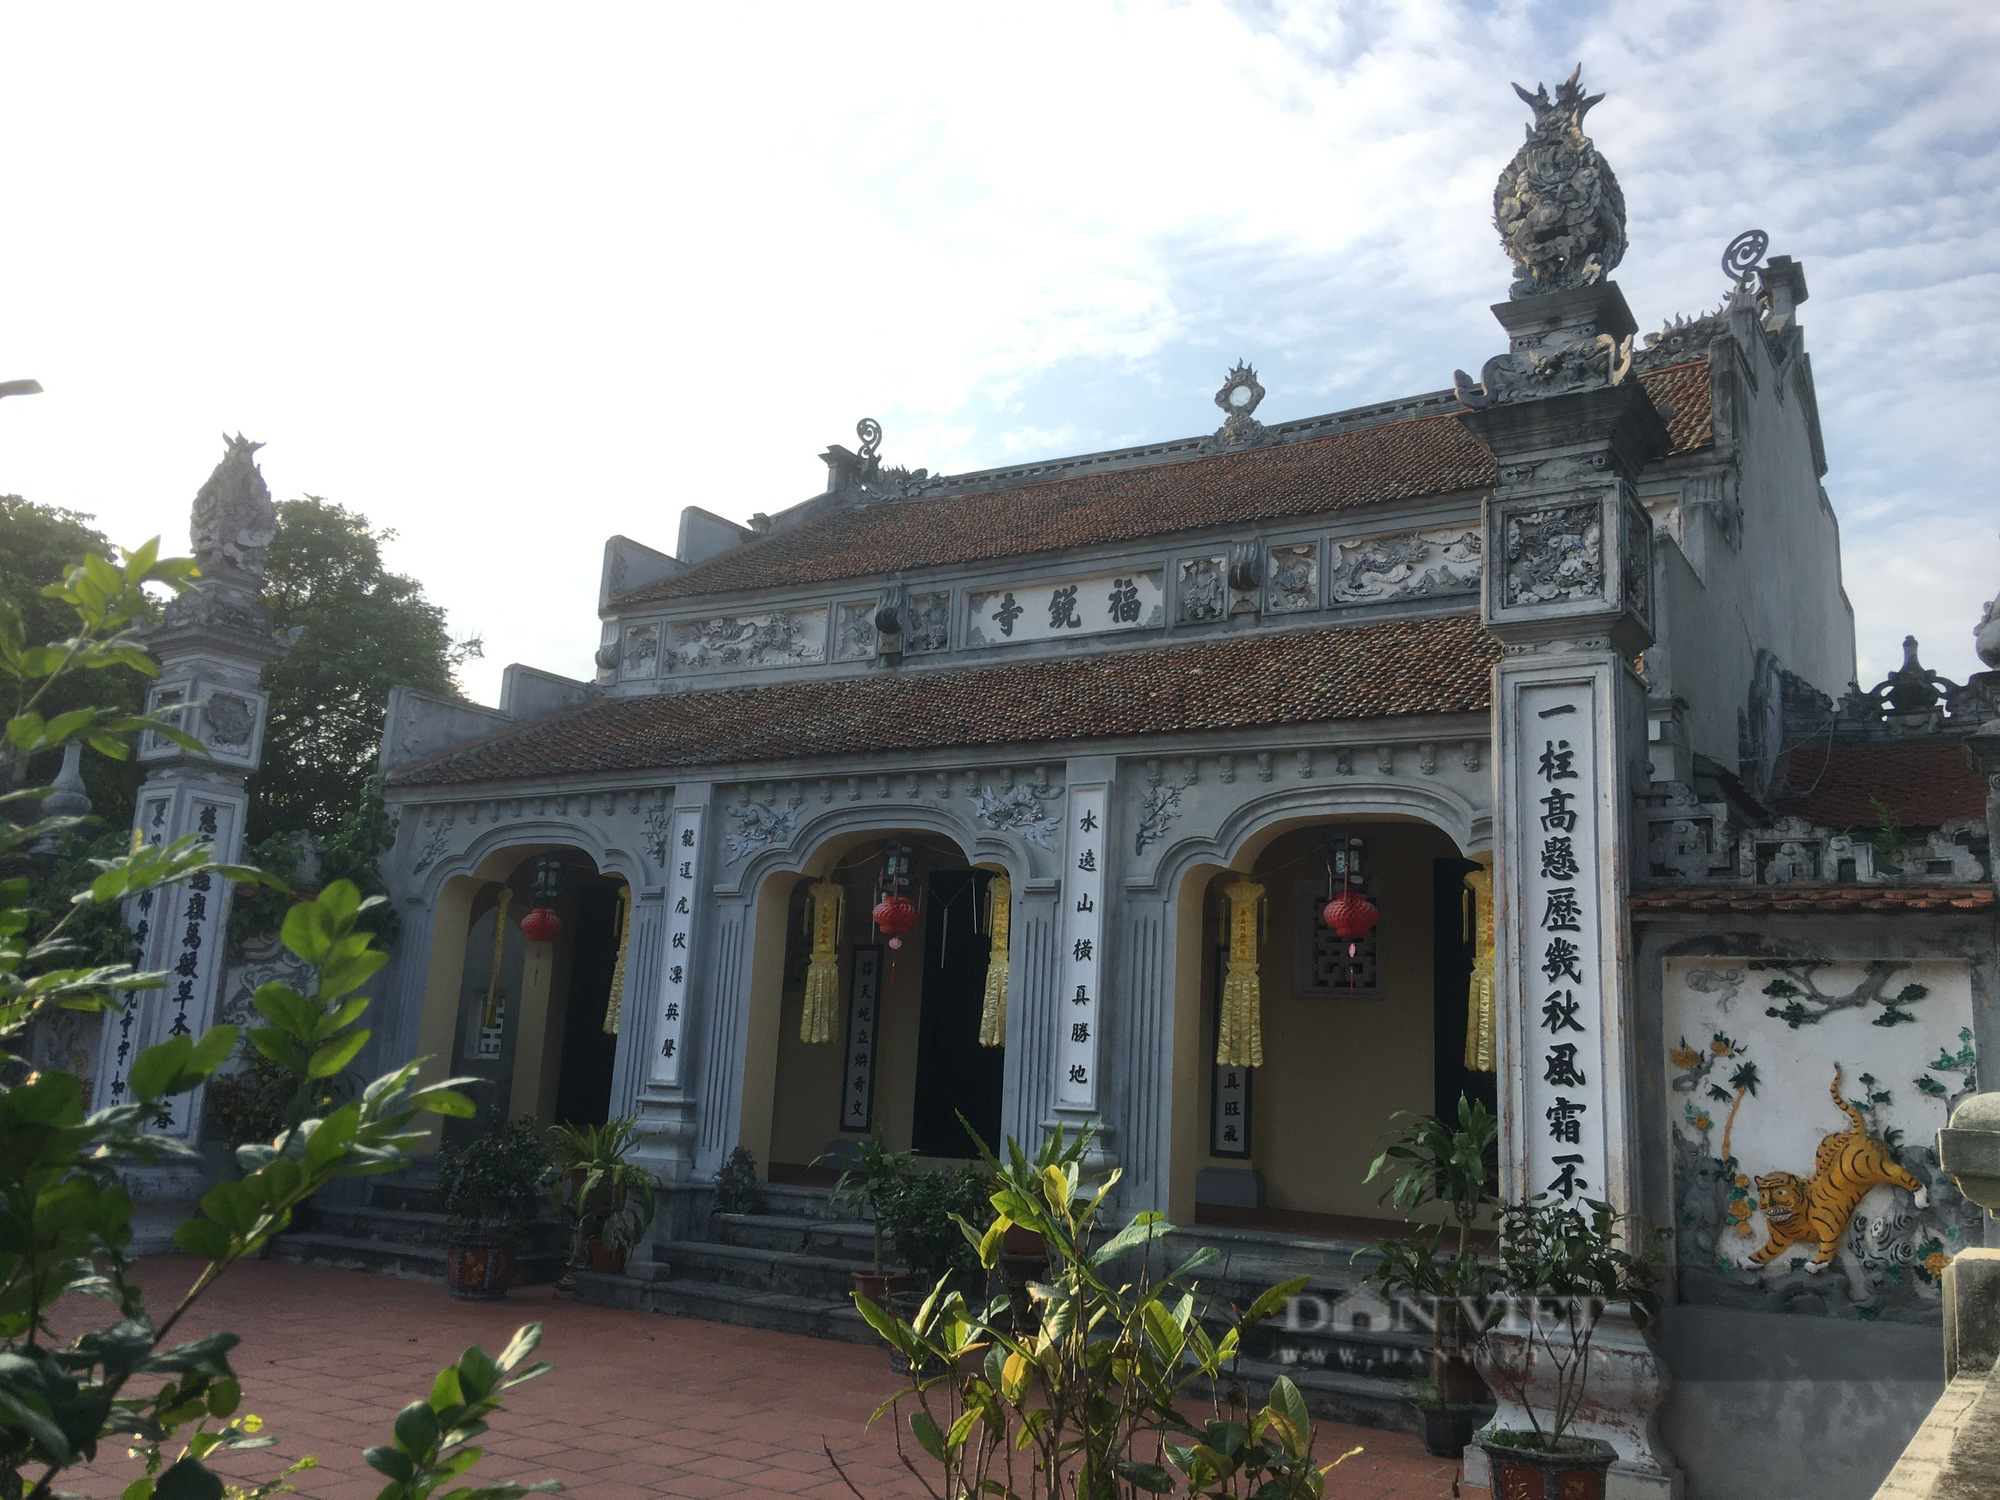 Bí ẩn ngôi chùa Rồi cổ trên 500 năm tuổi ở Hà Nội - Ảnh 4.